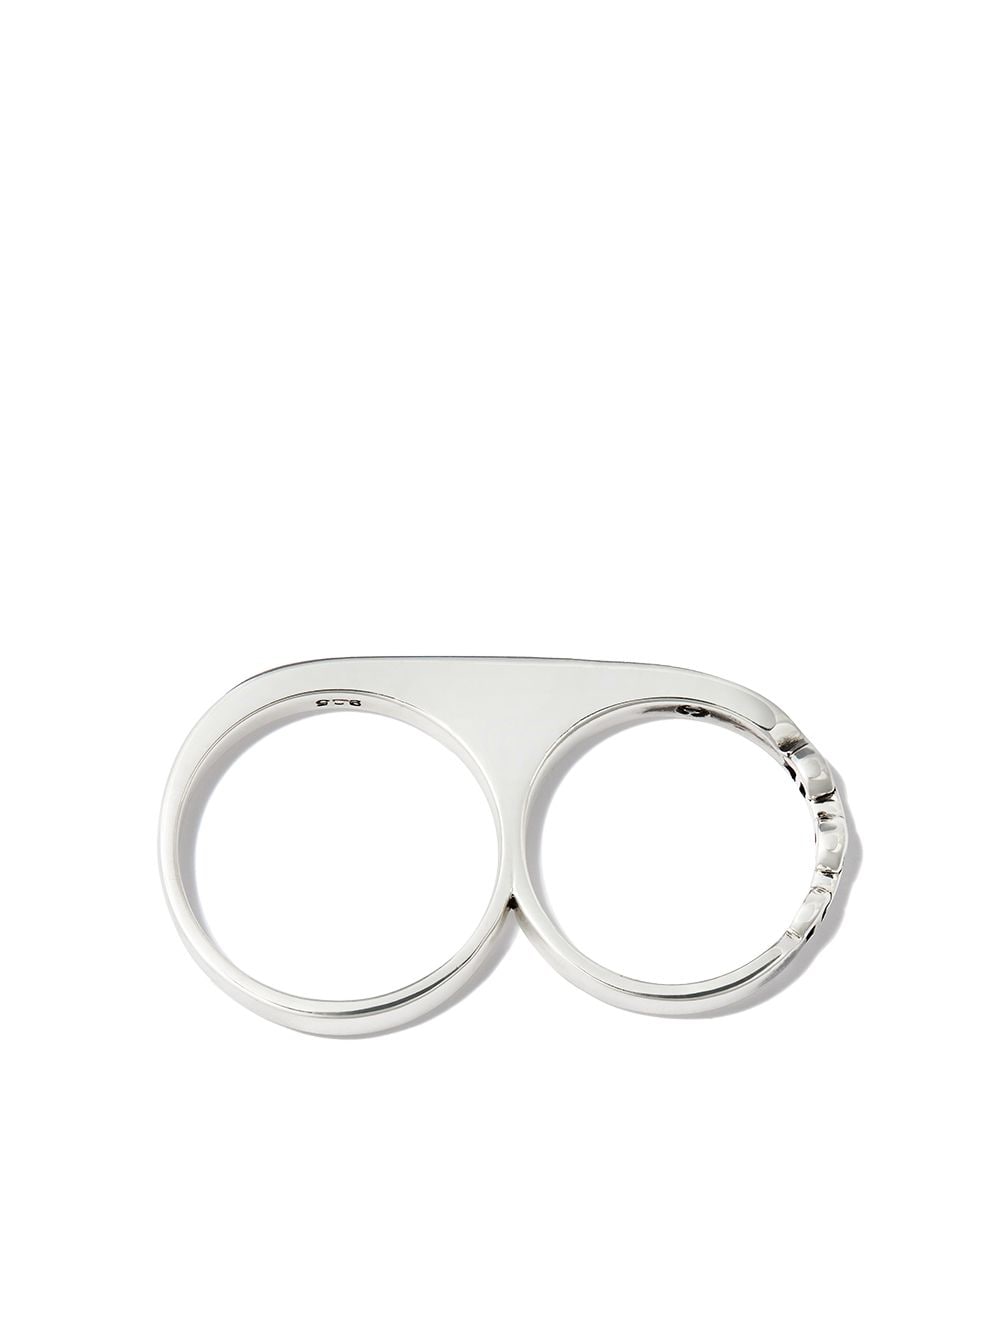 HOORSENBUHS silver knuckle ring von HOORSENBUHS